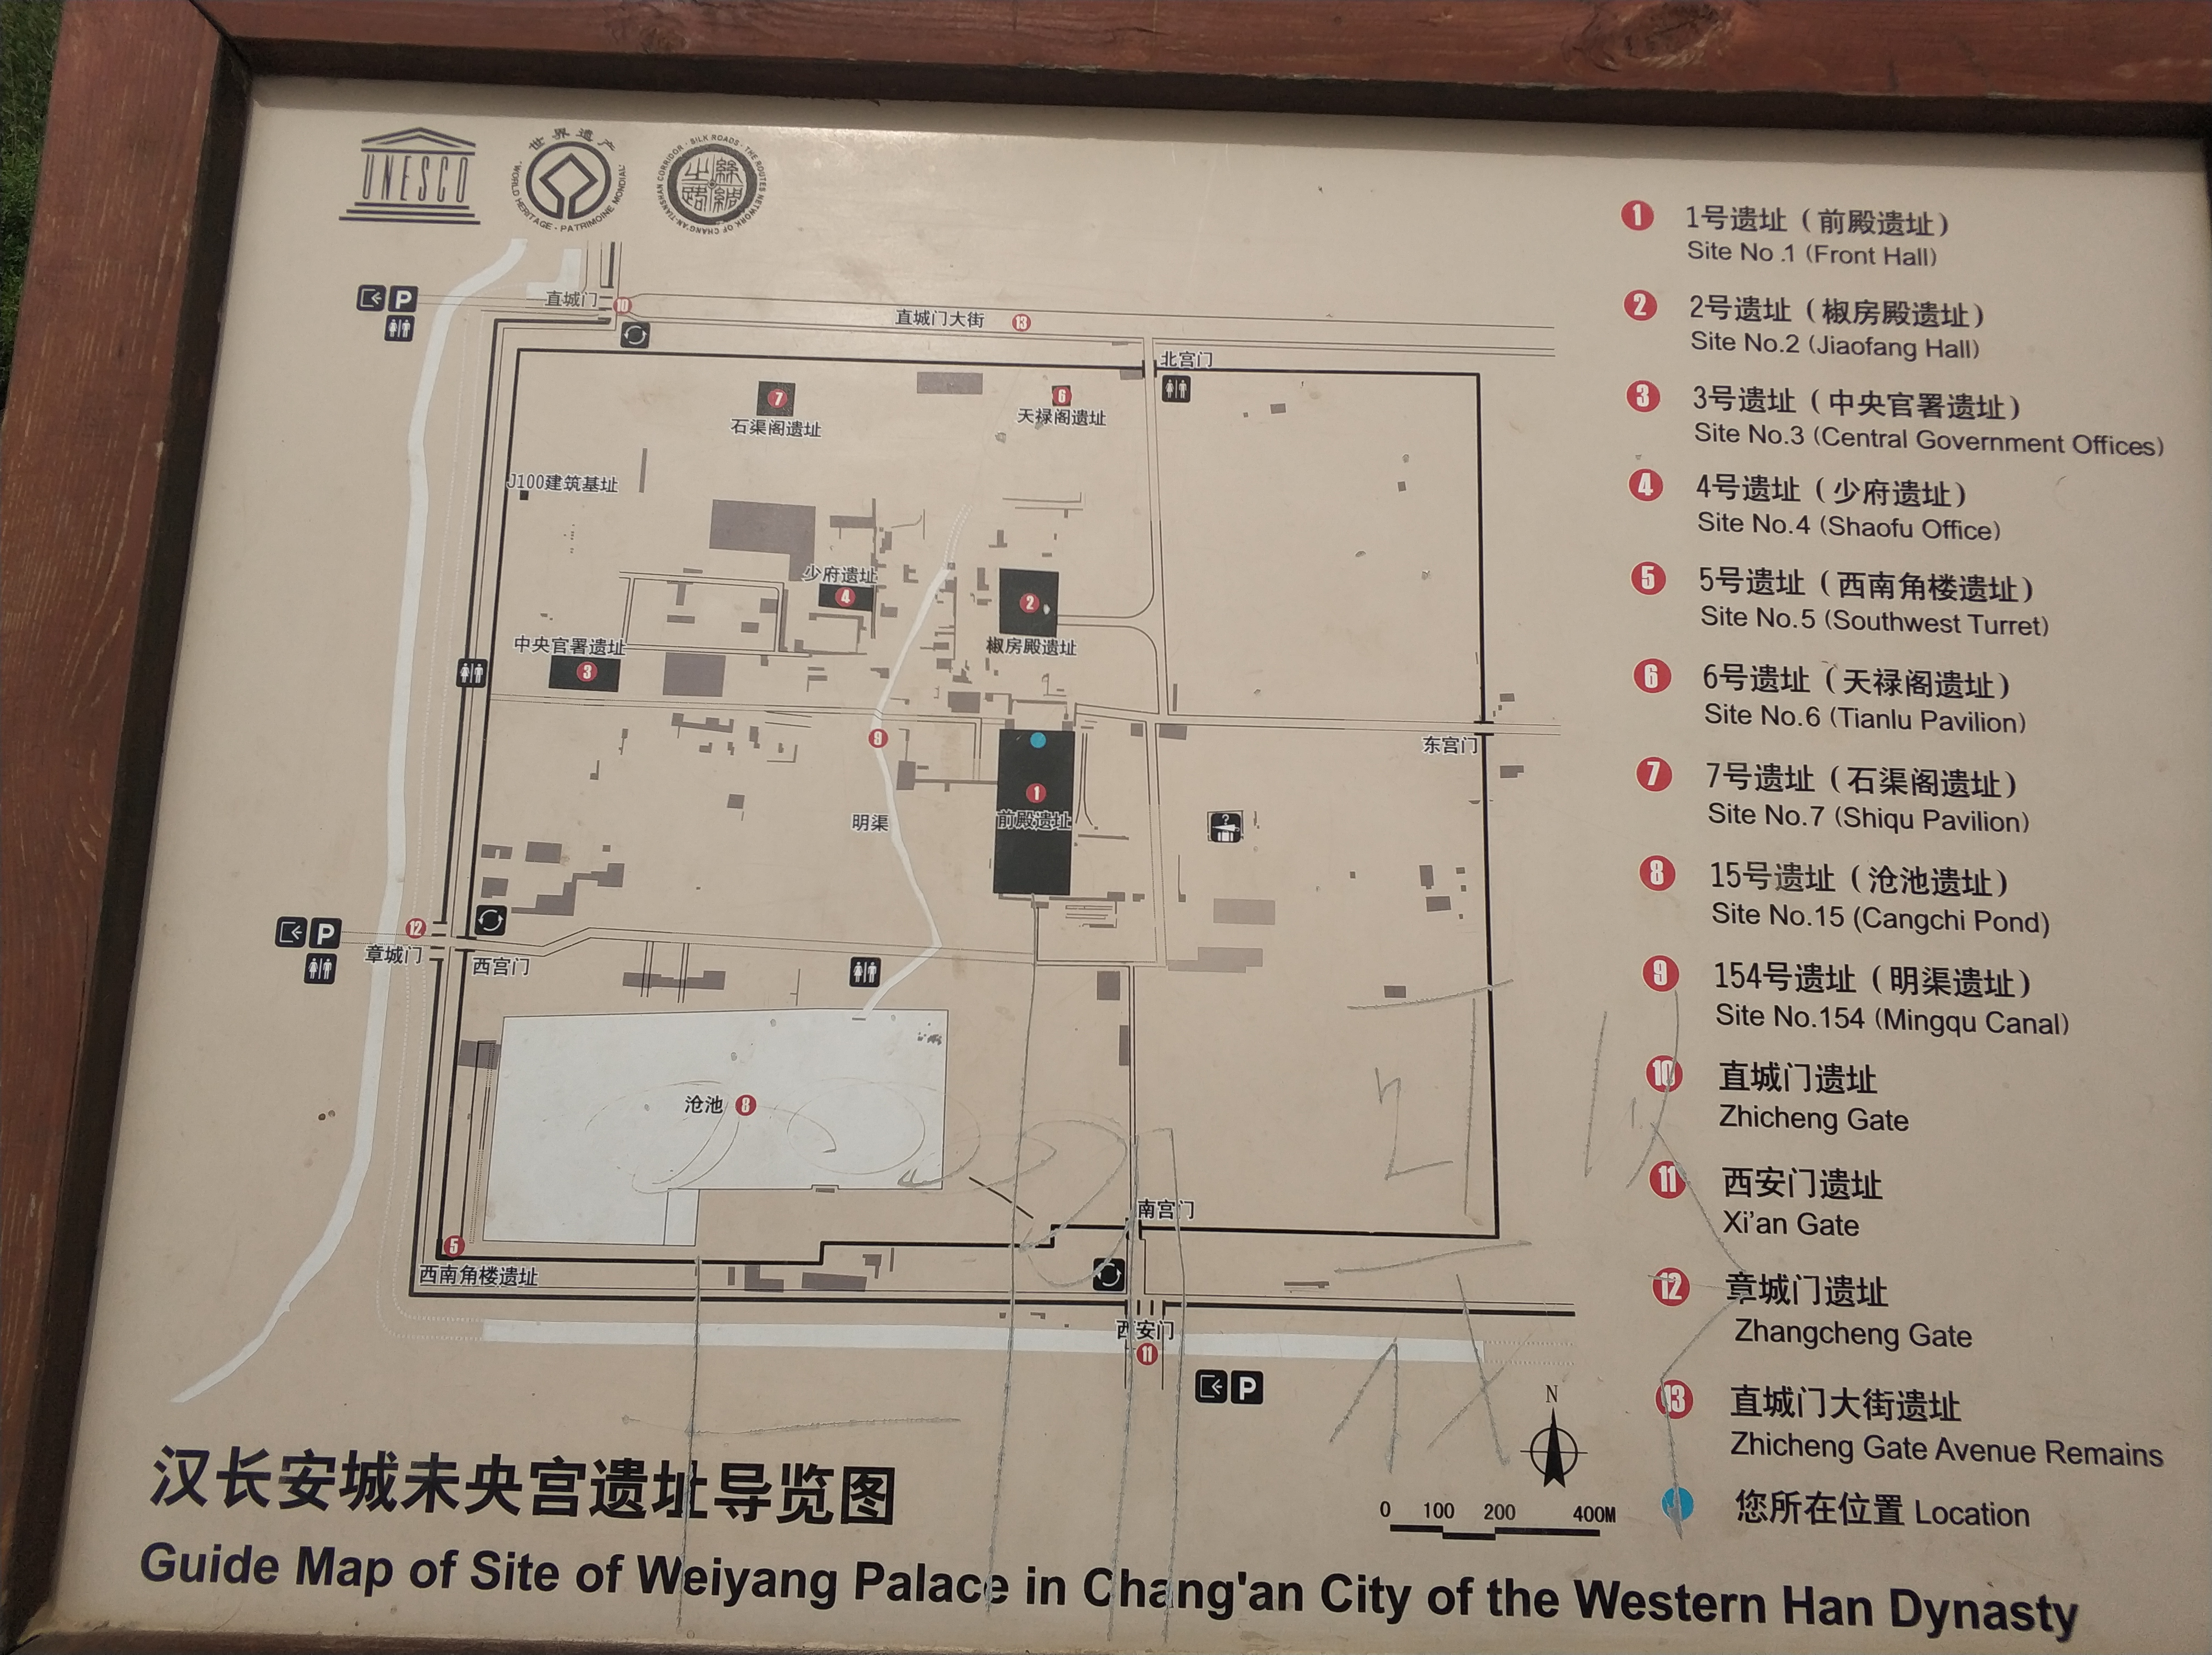 汉长安城未央宫遗址又开始修了!讨论下这里的发展?